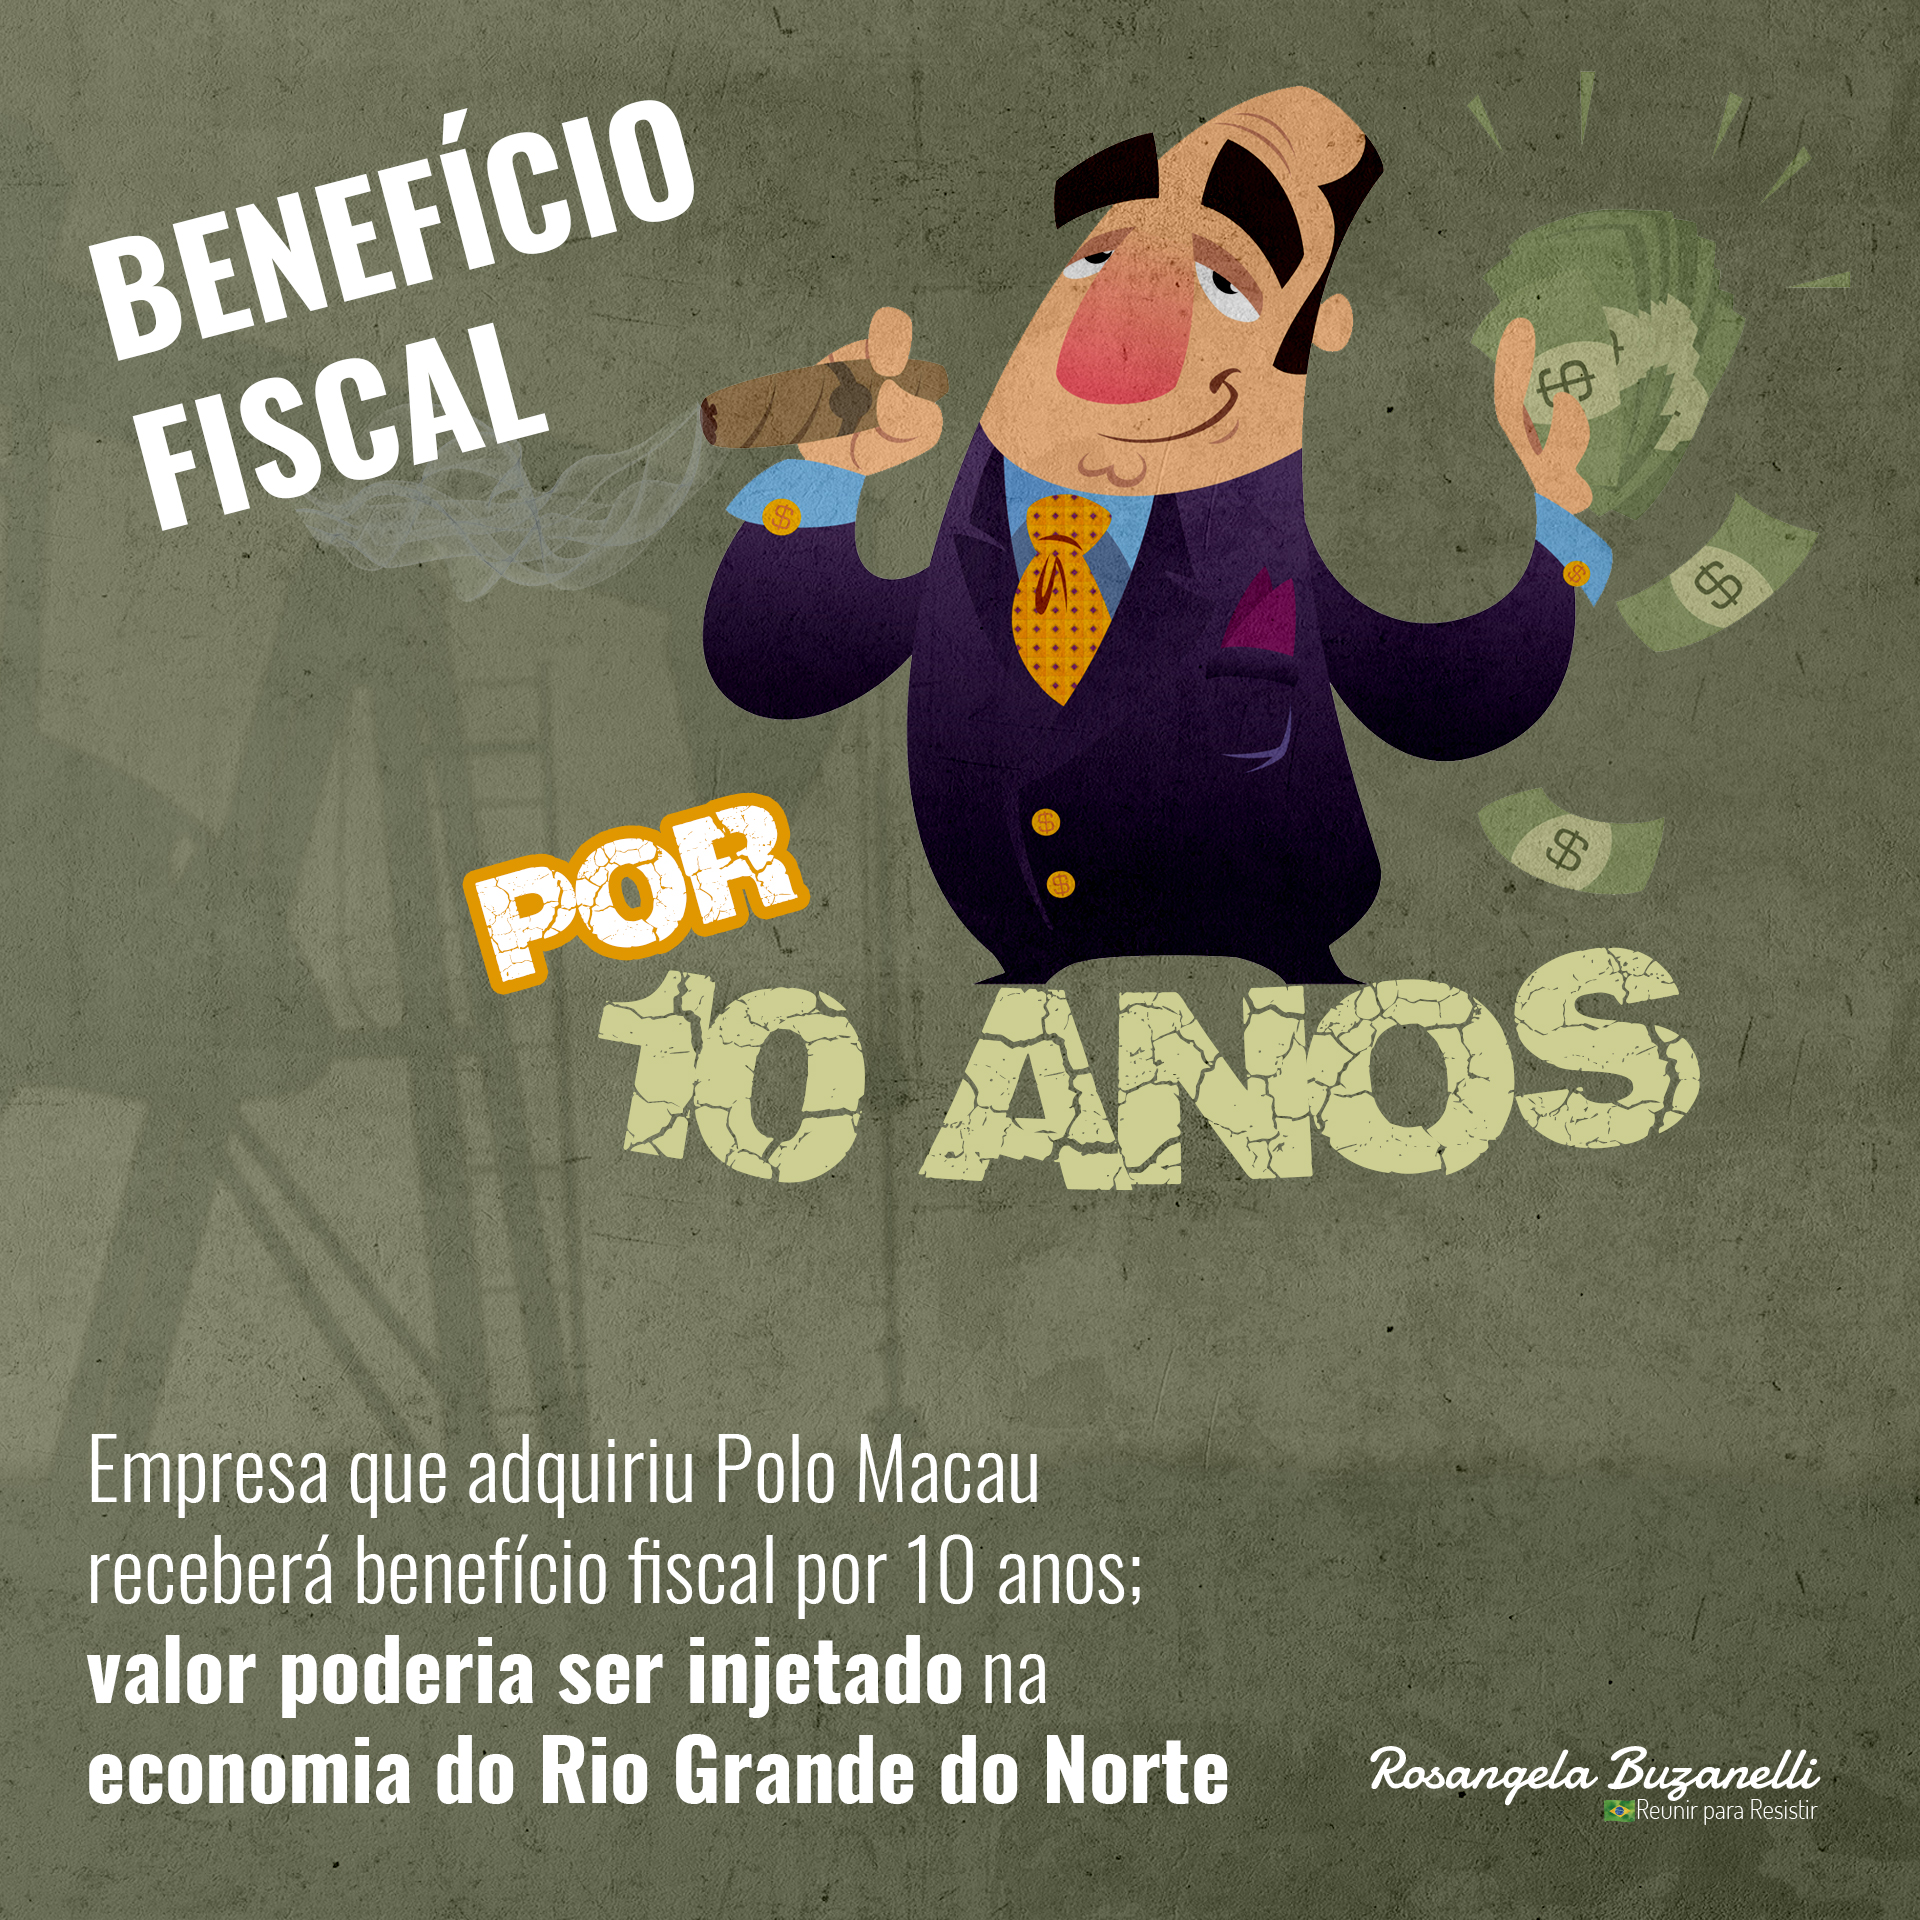 Benefício fiscal para empresa que adquiriu Polo Macau desnuda contradições da atual gestão da Petrobrás